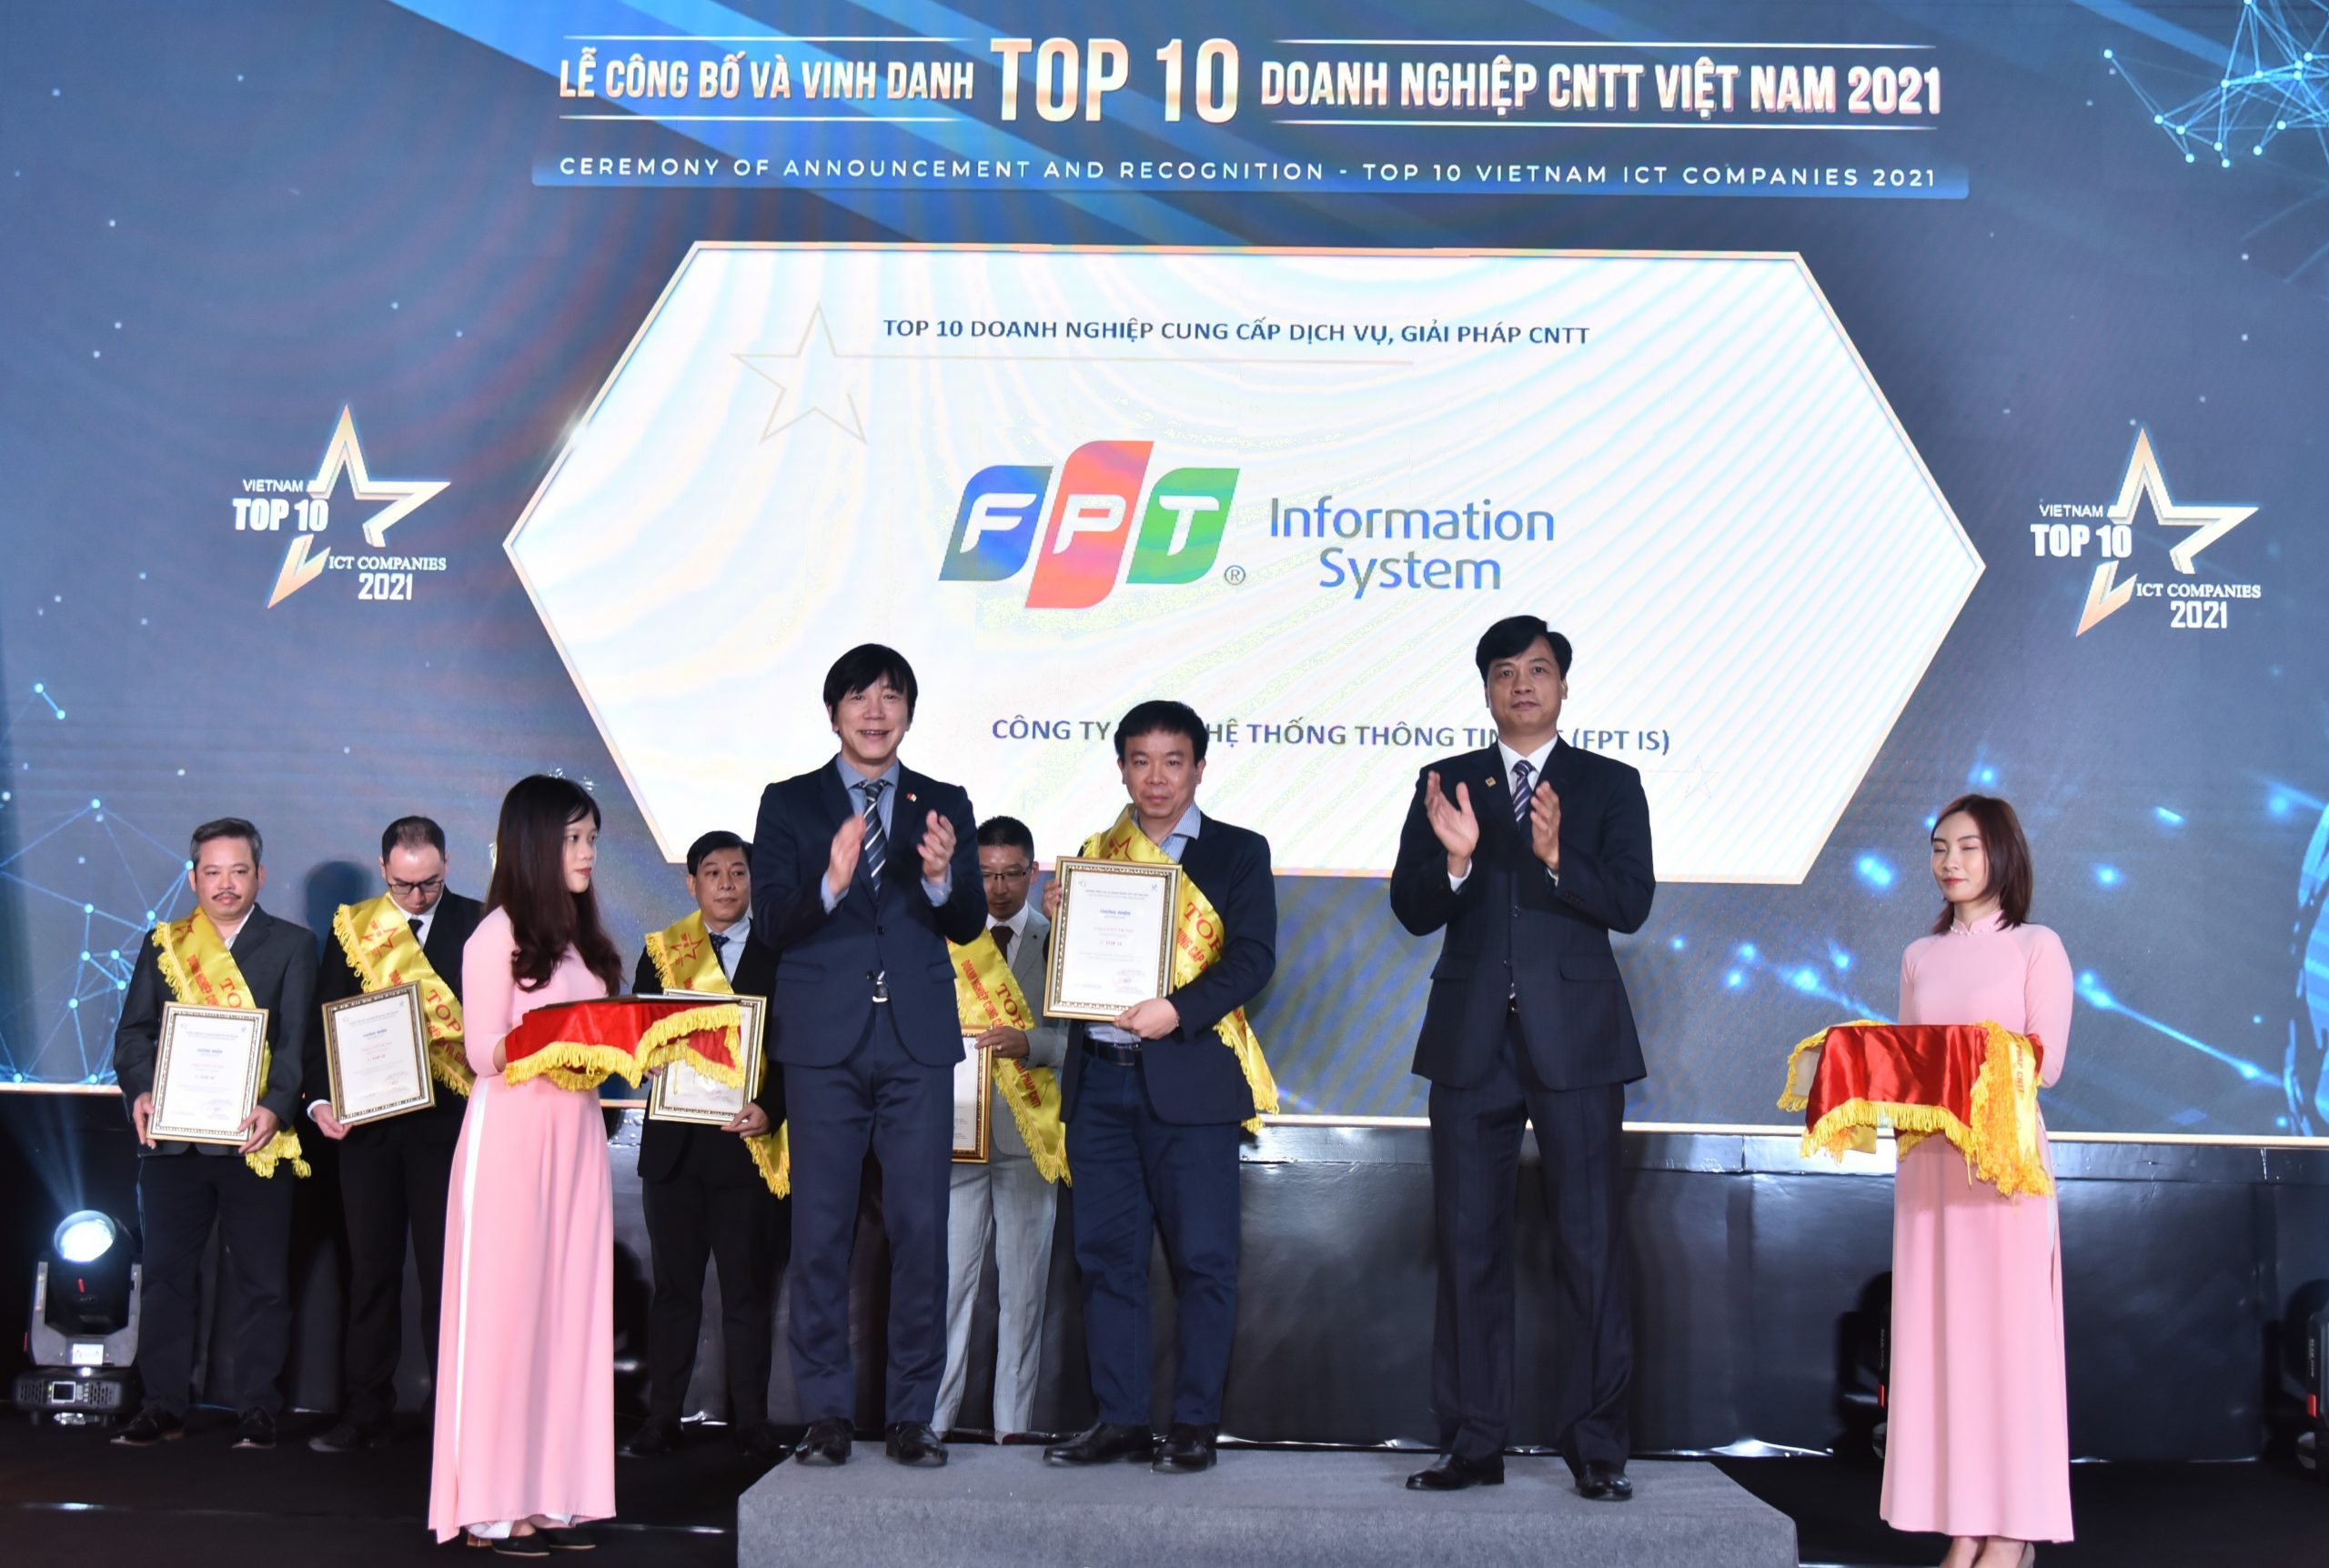 Top 10 Doanh nghiệp cung cấp dịch vụ, giải pháp Công nghệ thông tin Việt Nam 2021